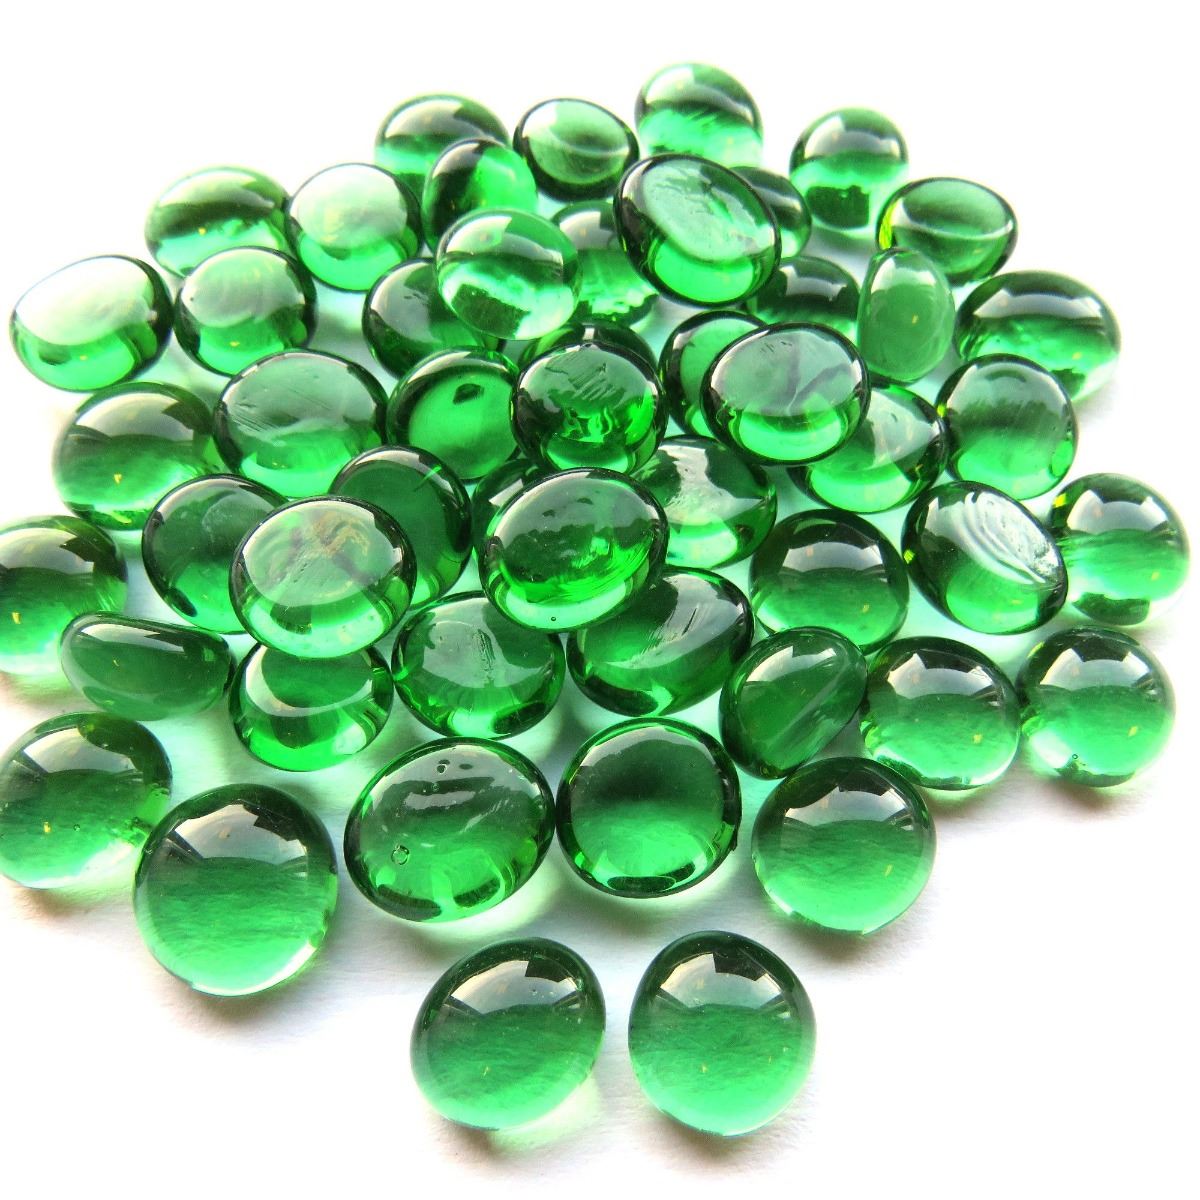 Mini Gems - Green Crystal